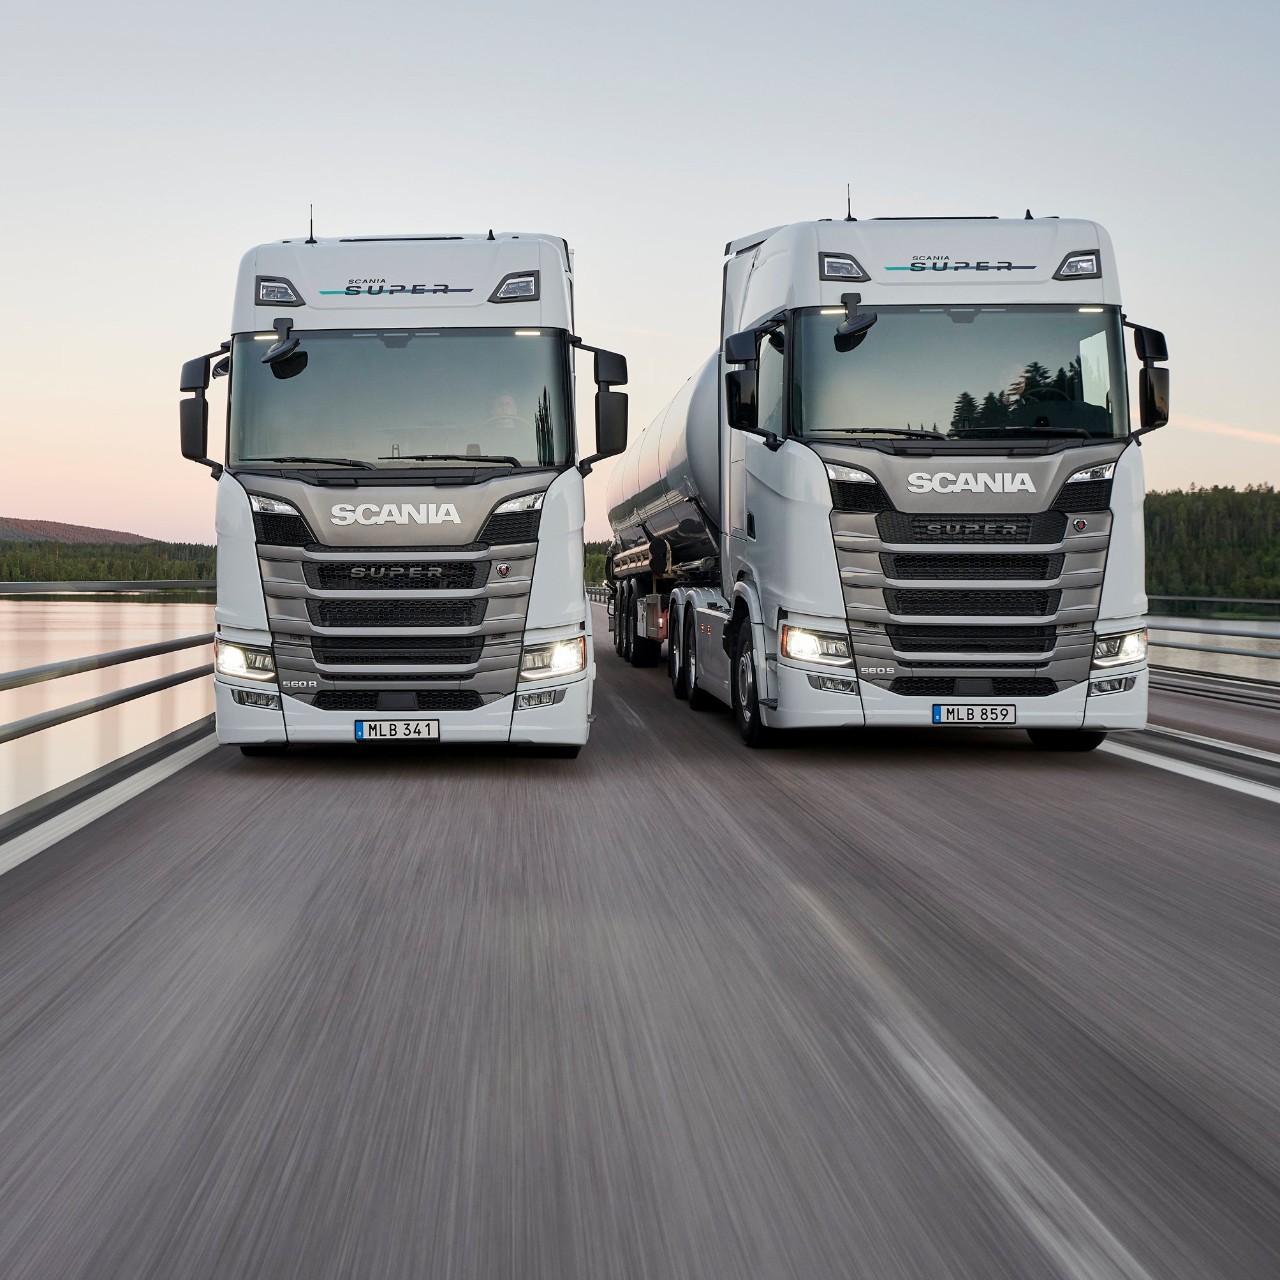 Scania visar nya drivlinor och stora uppdateringar